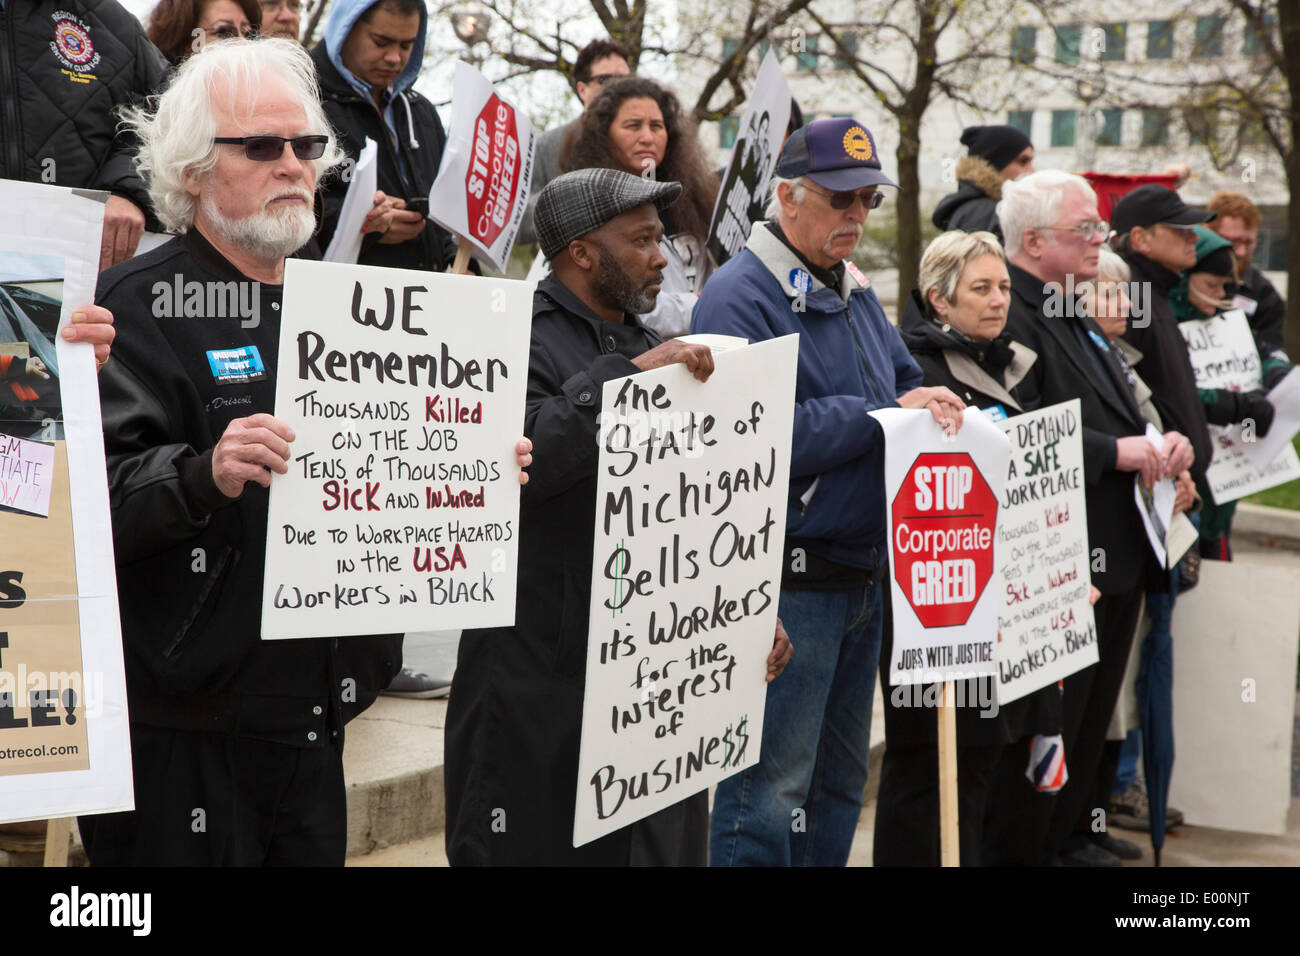 Detroit, Michigan USA - les membres de l'Union marque le Jour du souvenir des travailleurs en organisant une marche et manifestations silencieuse pour se souvenir des travailleurs tués au travail. Ils disent que des milliers de travailleurs meurent chaque année dans les lieux dangereux, et beaucoup d'autres de maladies professionnelles. Crédit : Jim West/Alamy Live News Banque D'Images